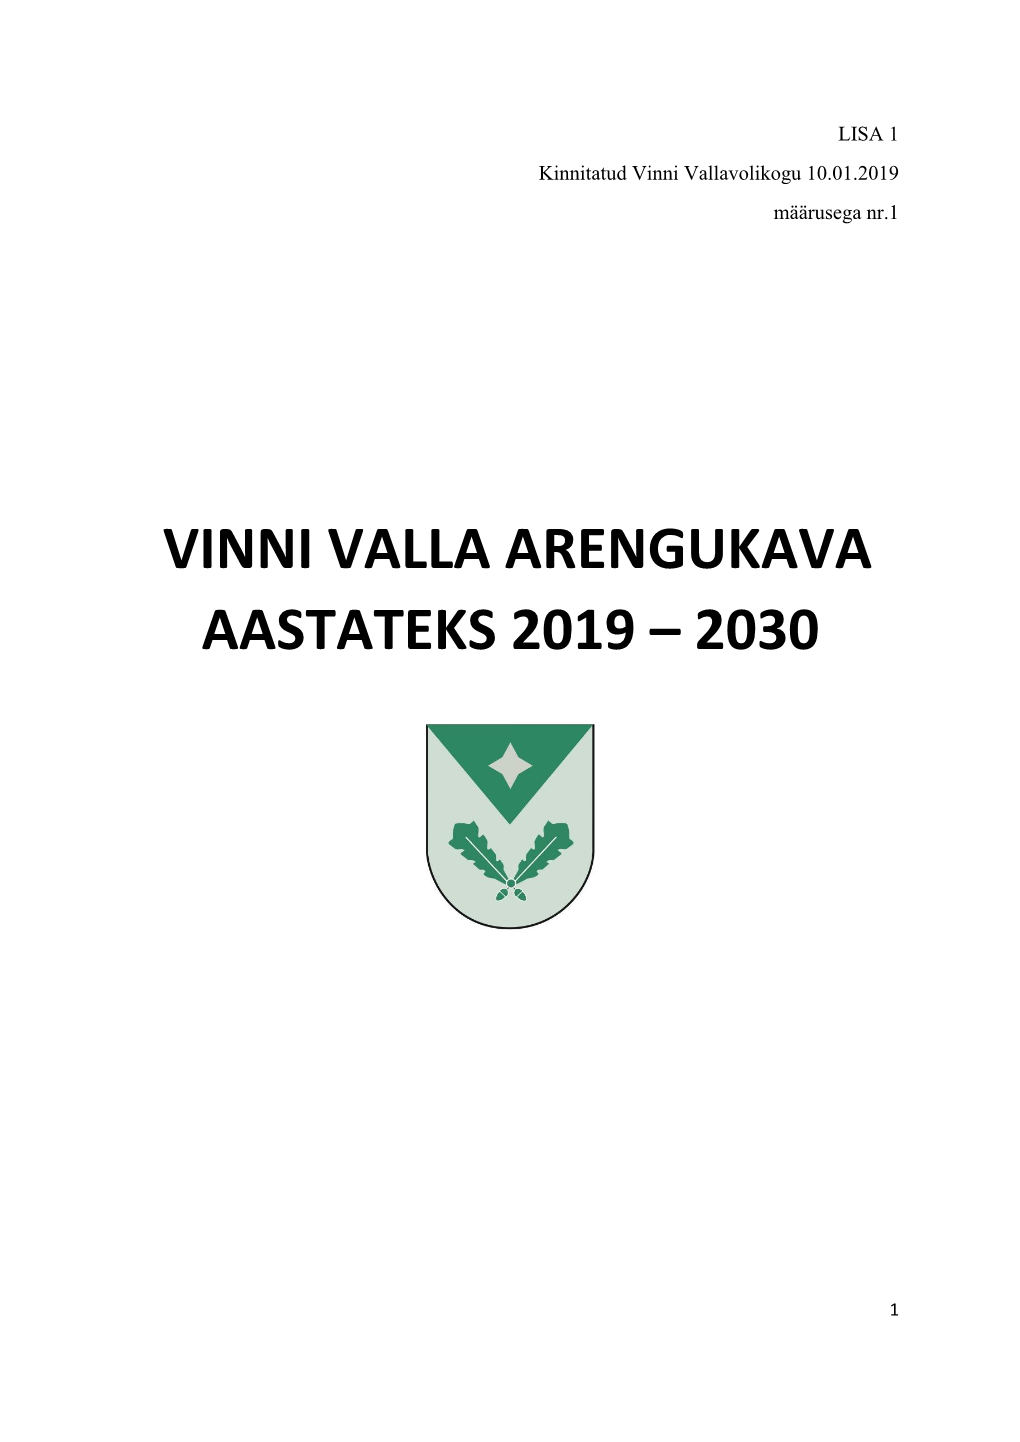 Vinni Valla Arengukava Aastateks 2019 – 2030